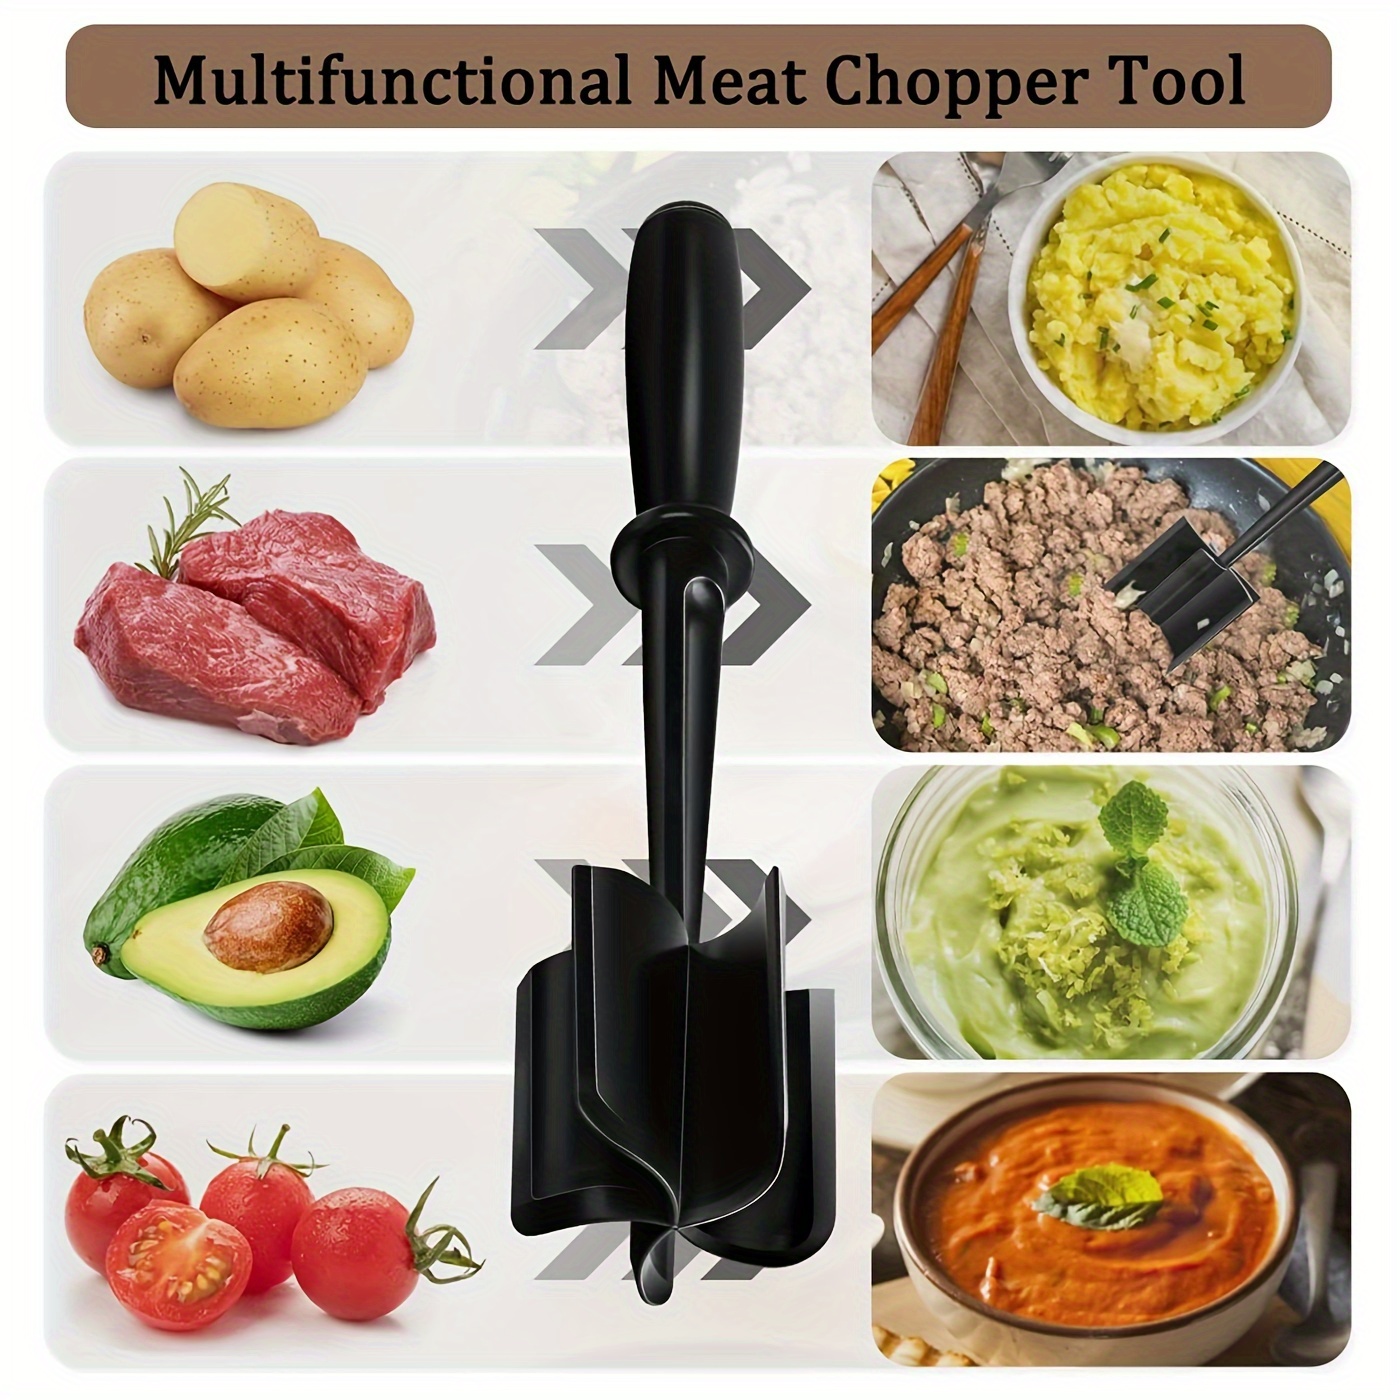 Meat Chopper, Ground Meat Chopper Utensil, Multifunctional Heat